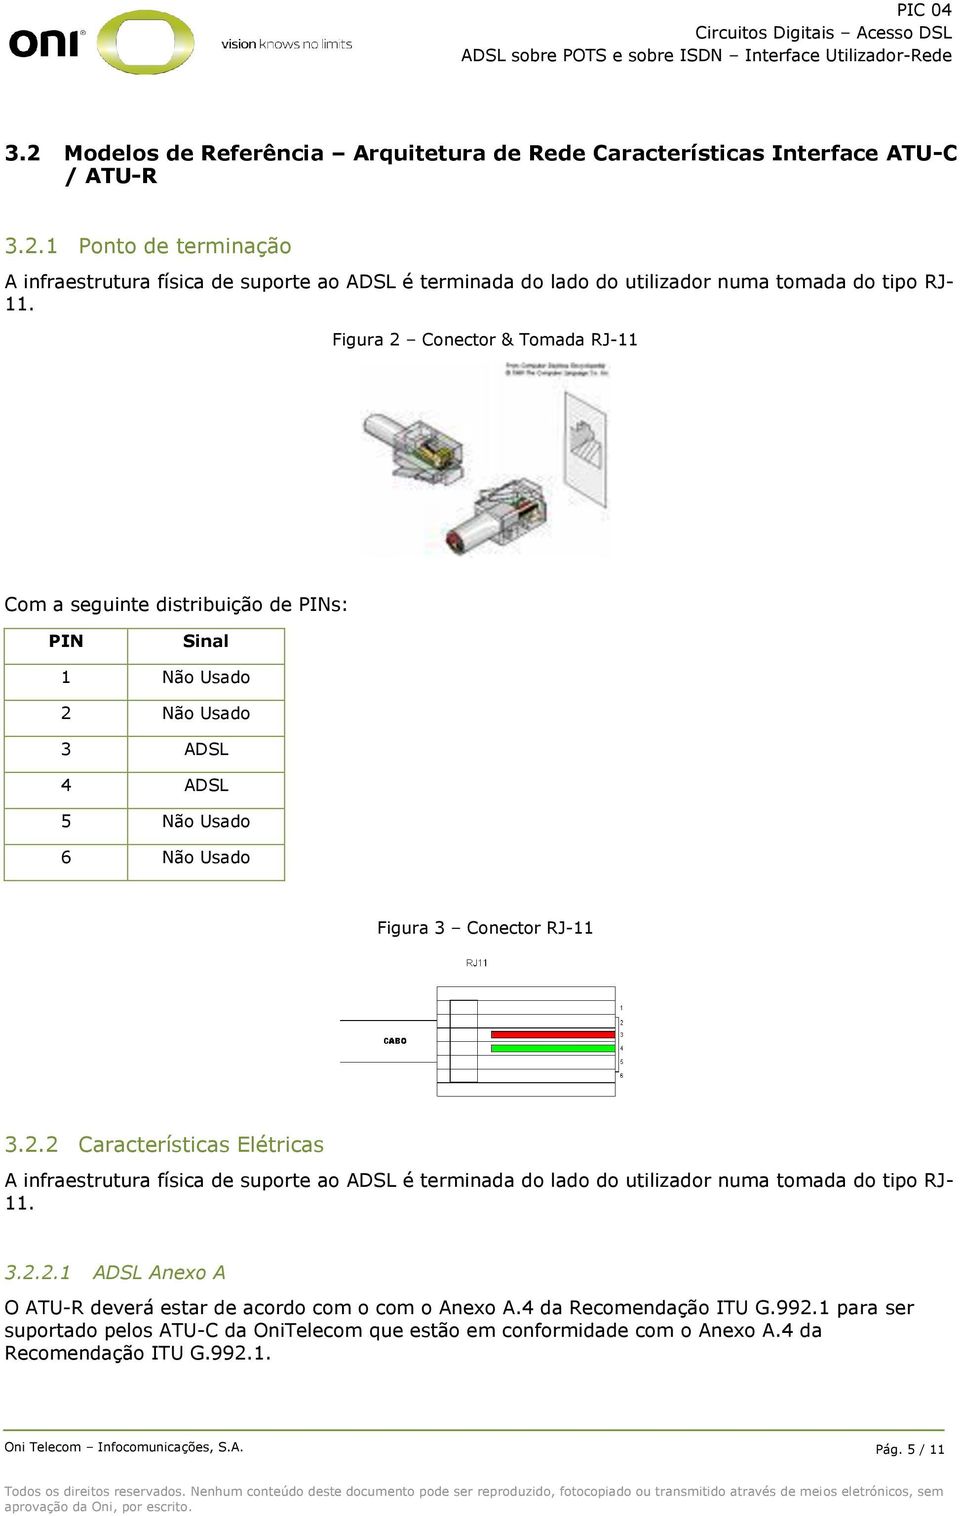 3.2.2.1 ADSL Anexo A O ATU-R deverá estar de acordo com o com o Anexo A.4 da Recomendação ITU G.992.1 para ser suportado pelos ATU-C da OniTelecom que estão em conformidade com o Anexo A.